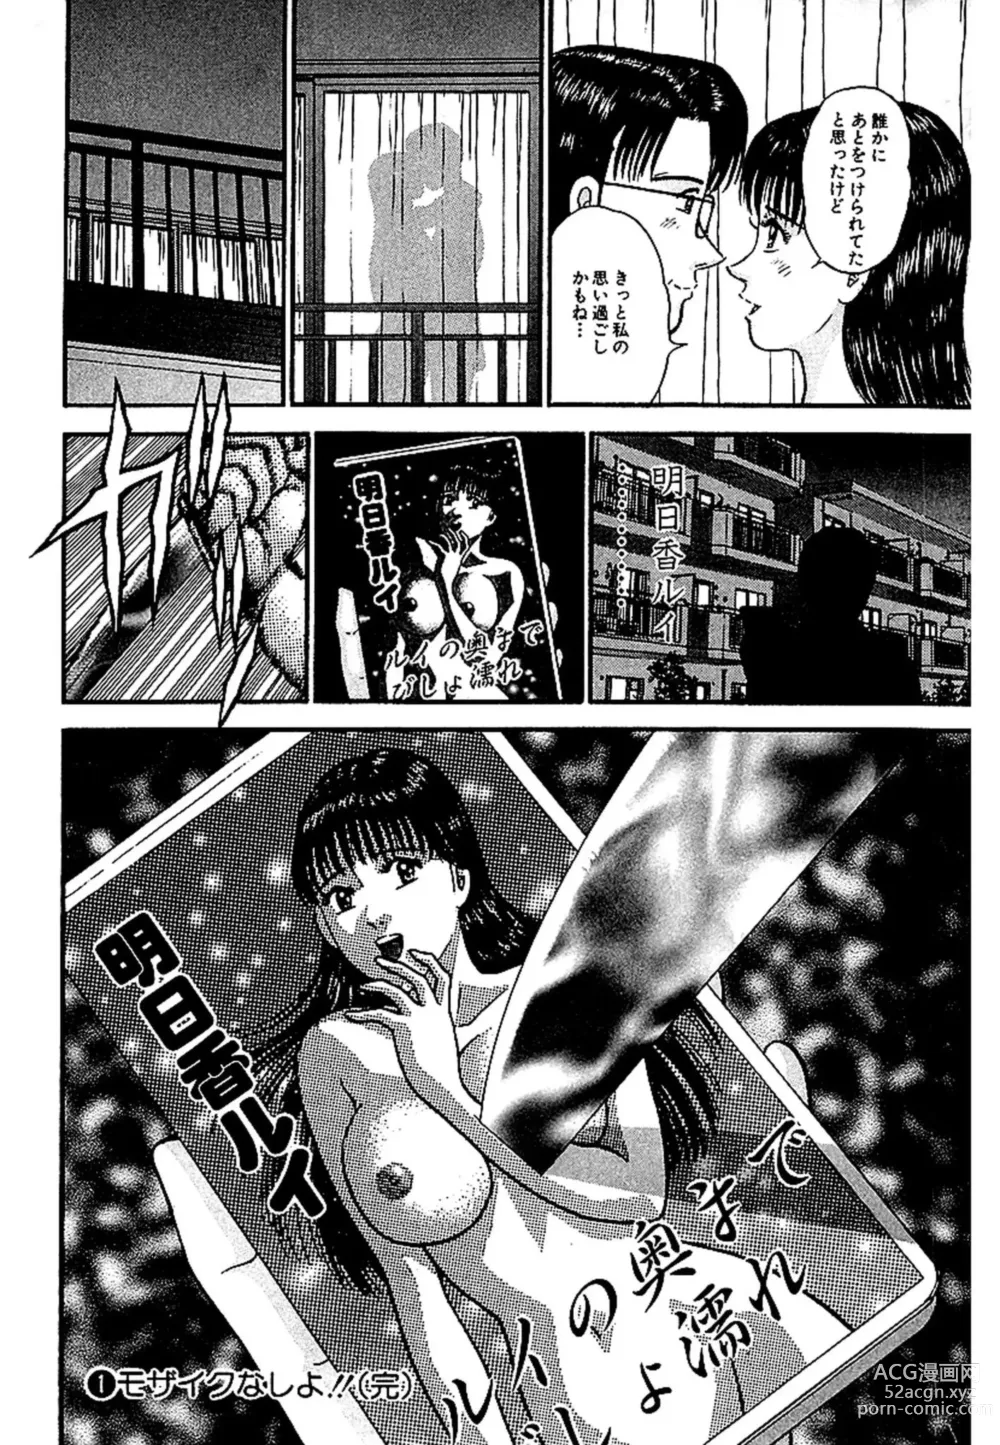 Page 199 of manga Sekkusuresu Shinsō-ban 1